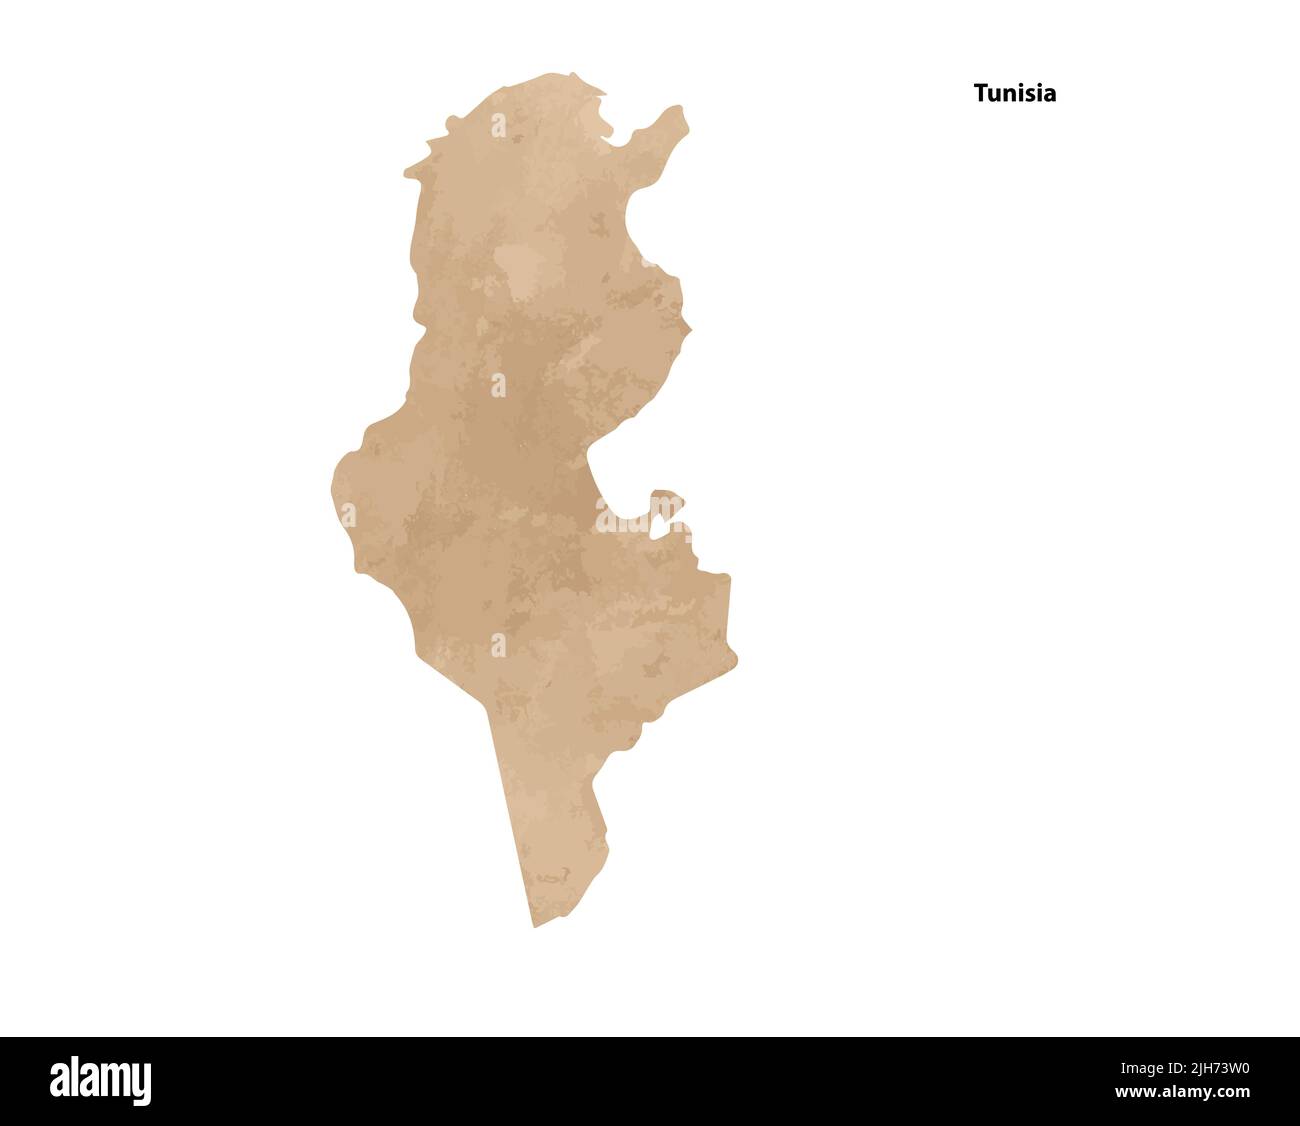 Alte Vintage Papier strukturierte Karte von Tunesien Land - Vektor-Illustration Stock Vektor